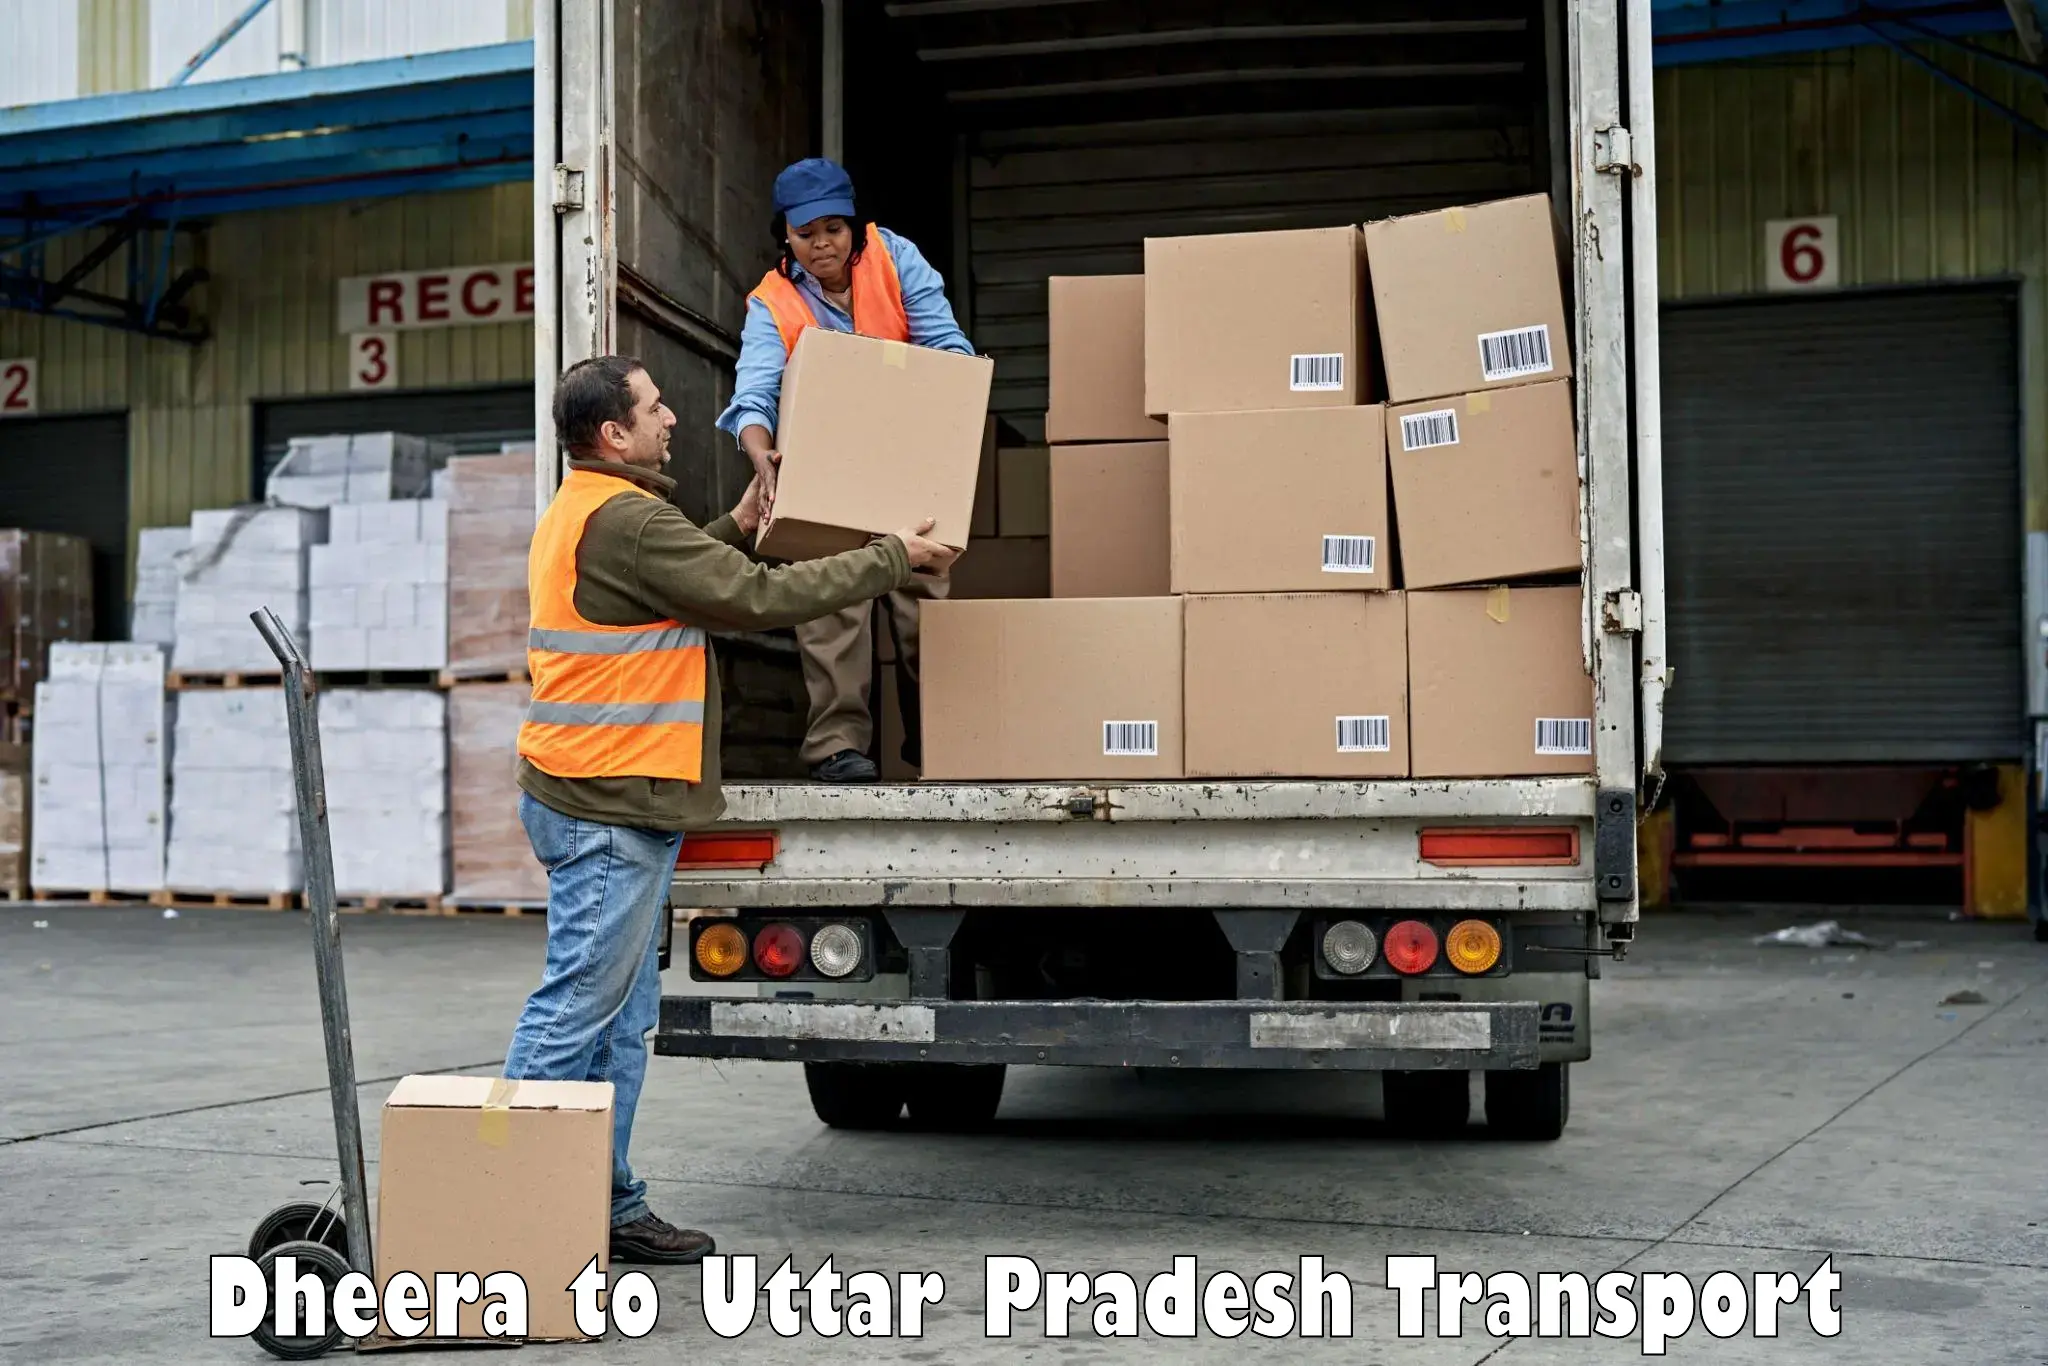 Transport in sharing Dheera to Sewarhi